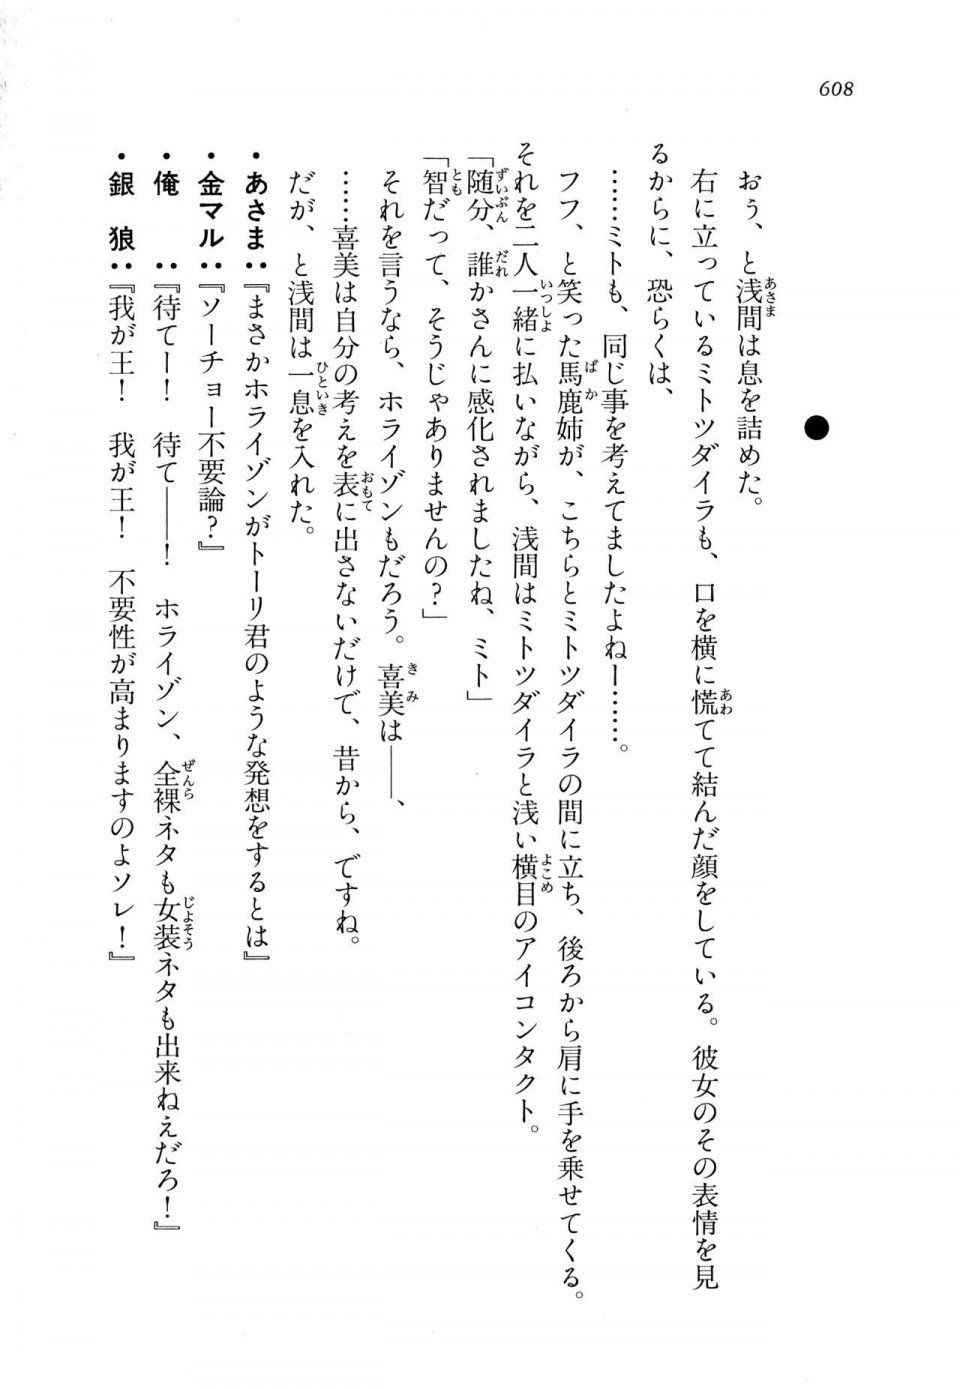 Kyoukai Senjou no Horizon LN Vol 11(5A) - Photo #608